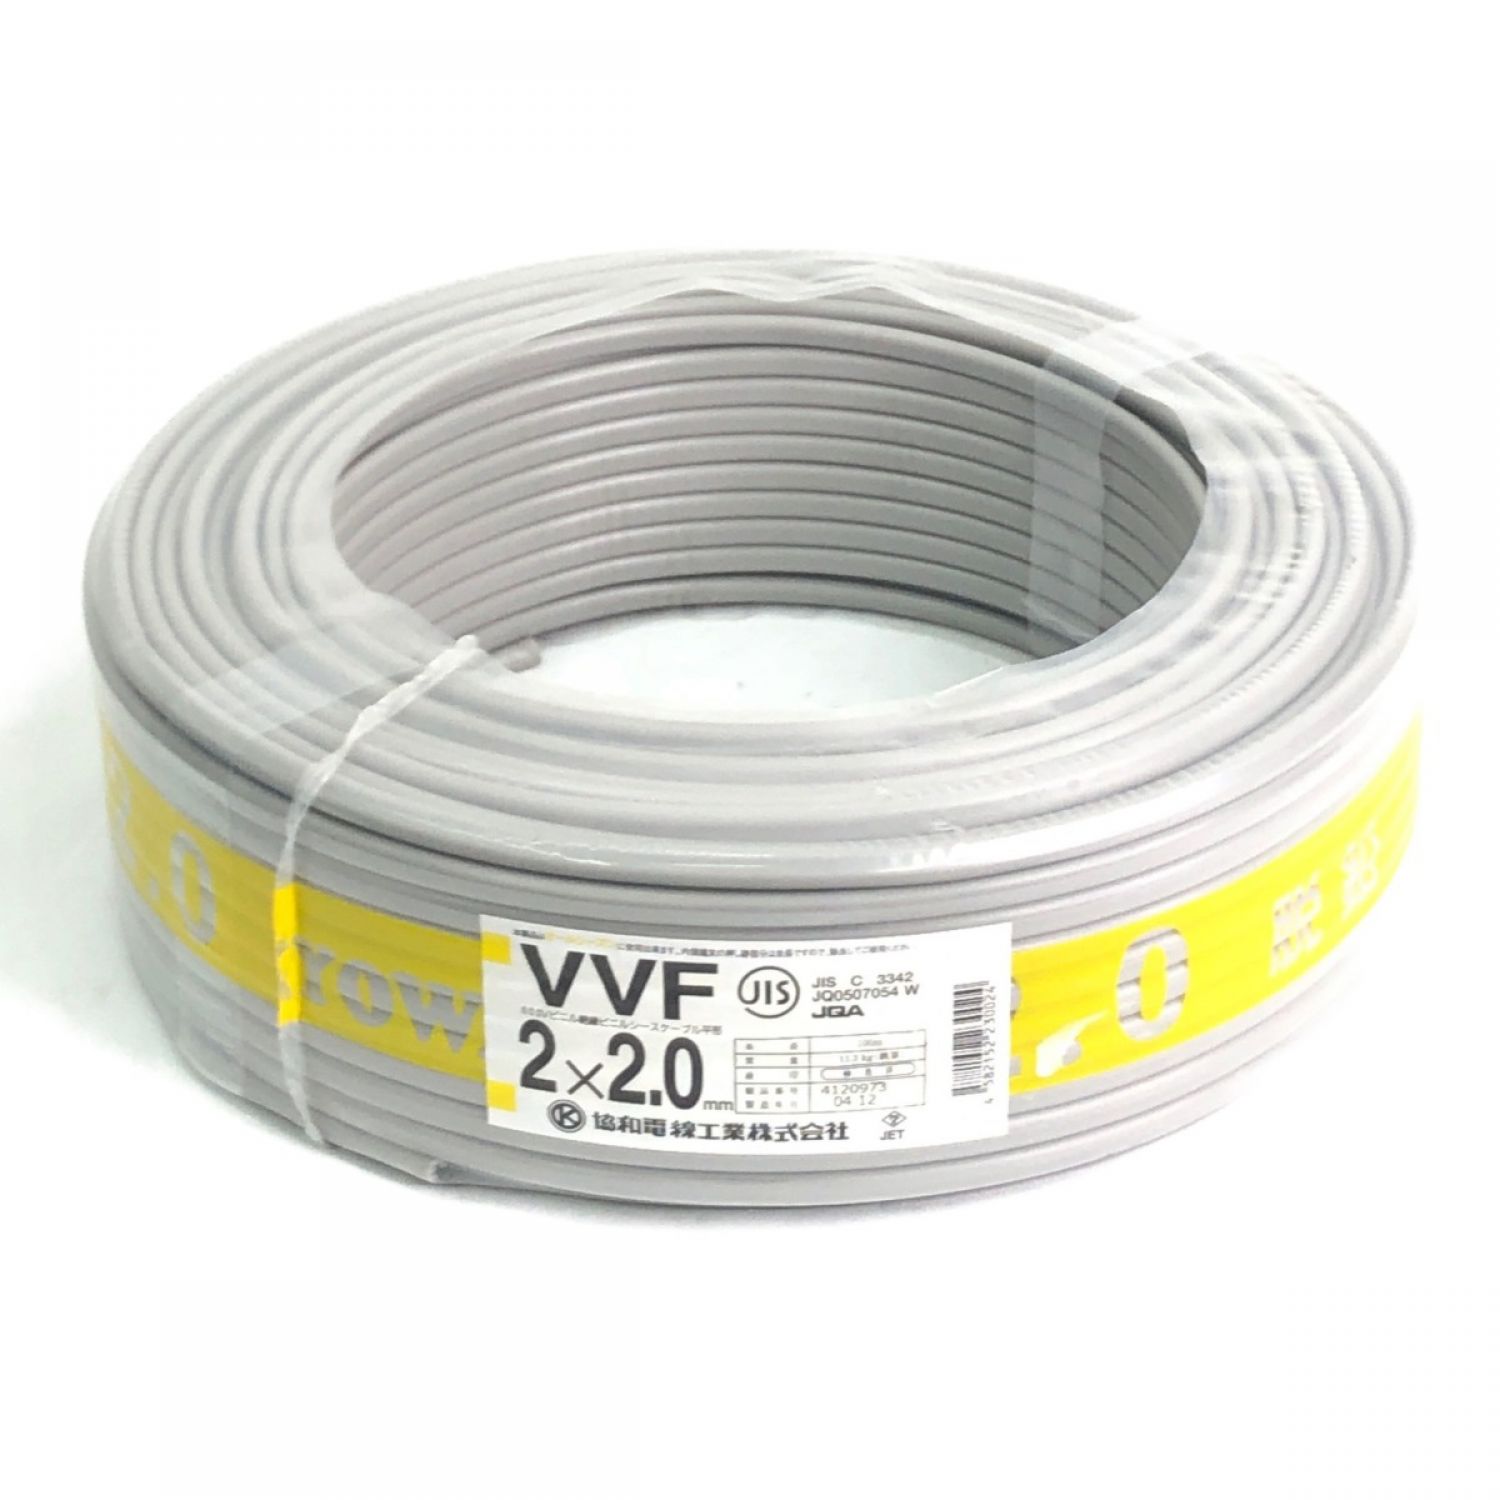 VVFケーブル 2×2.0mm 100m 協和電線工業-